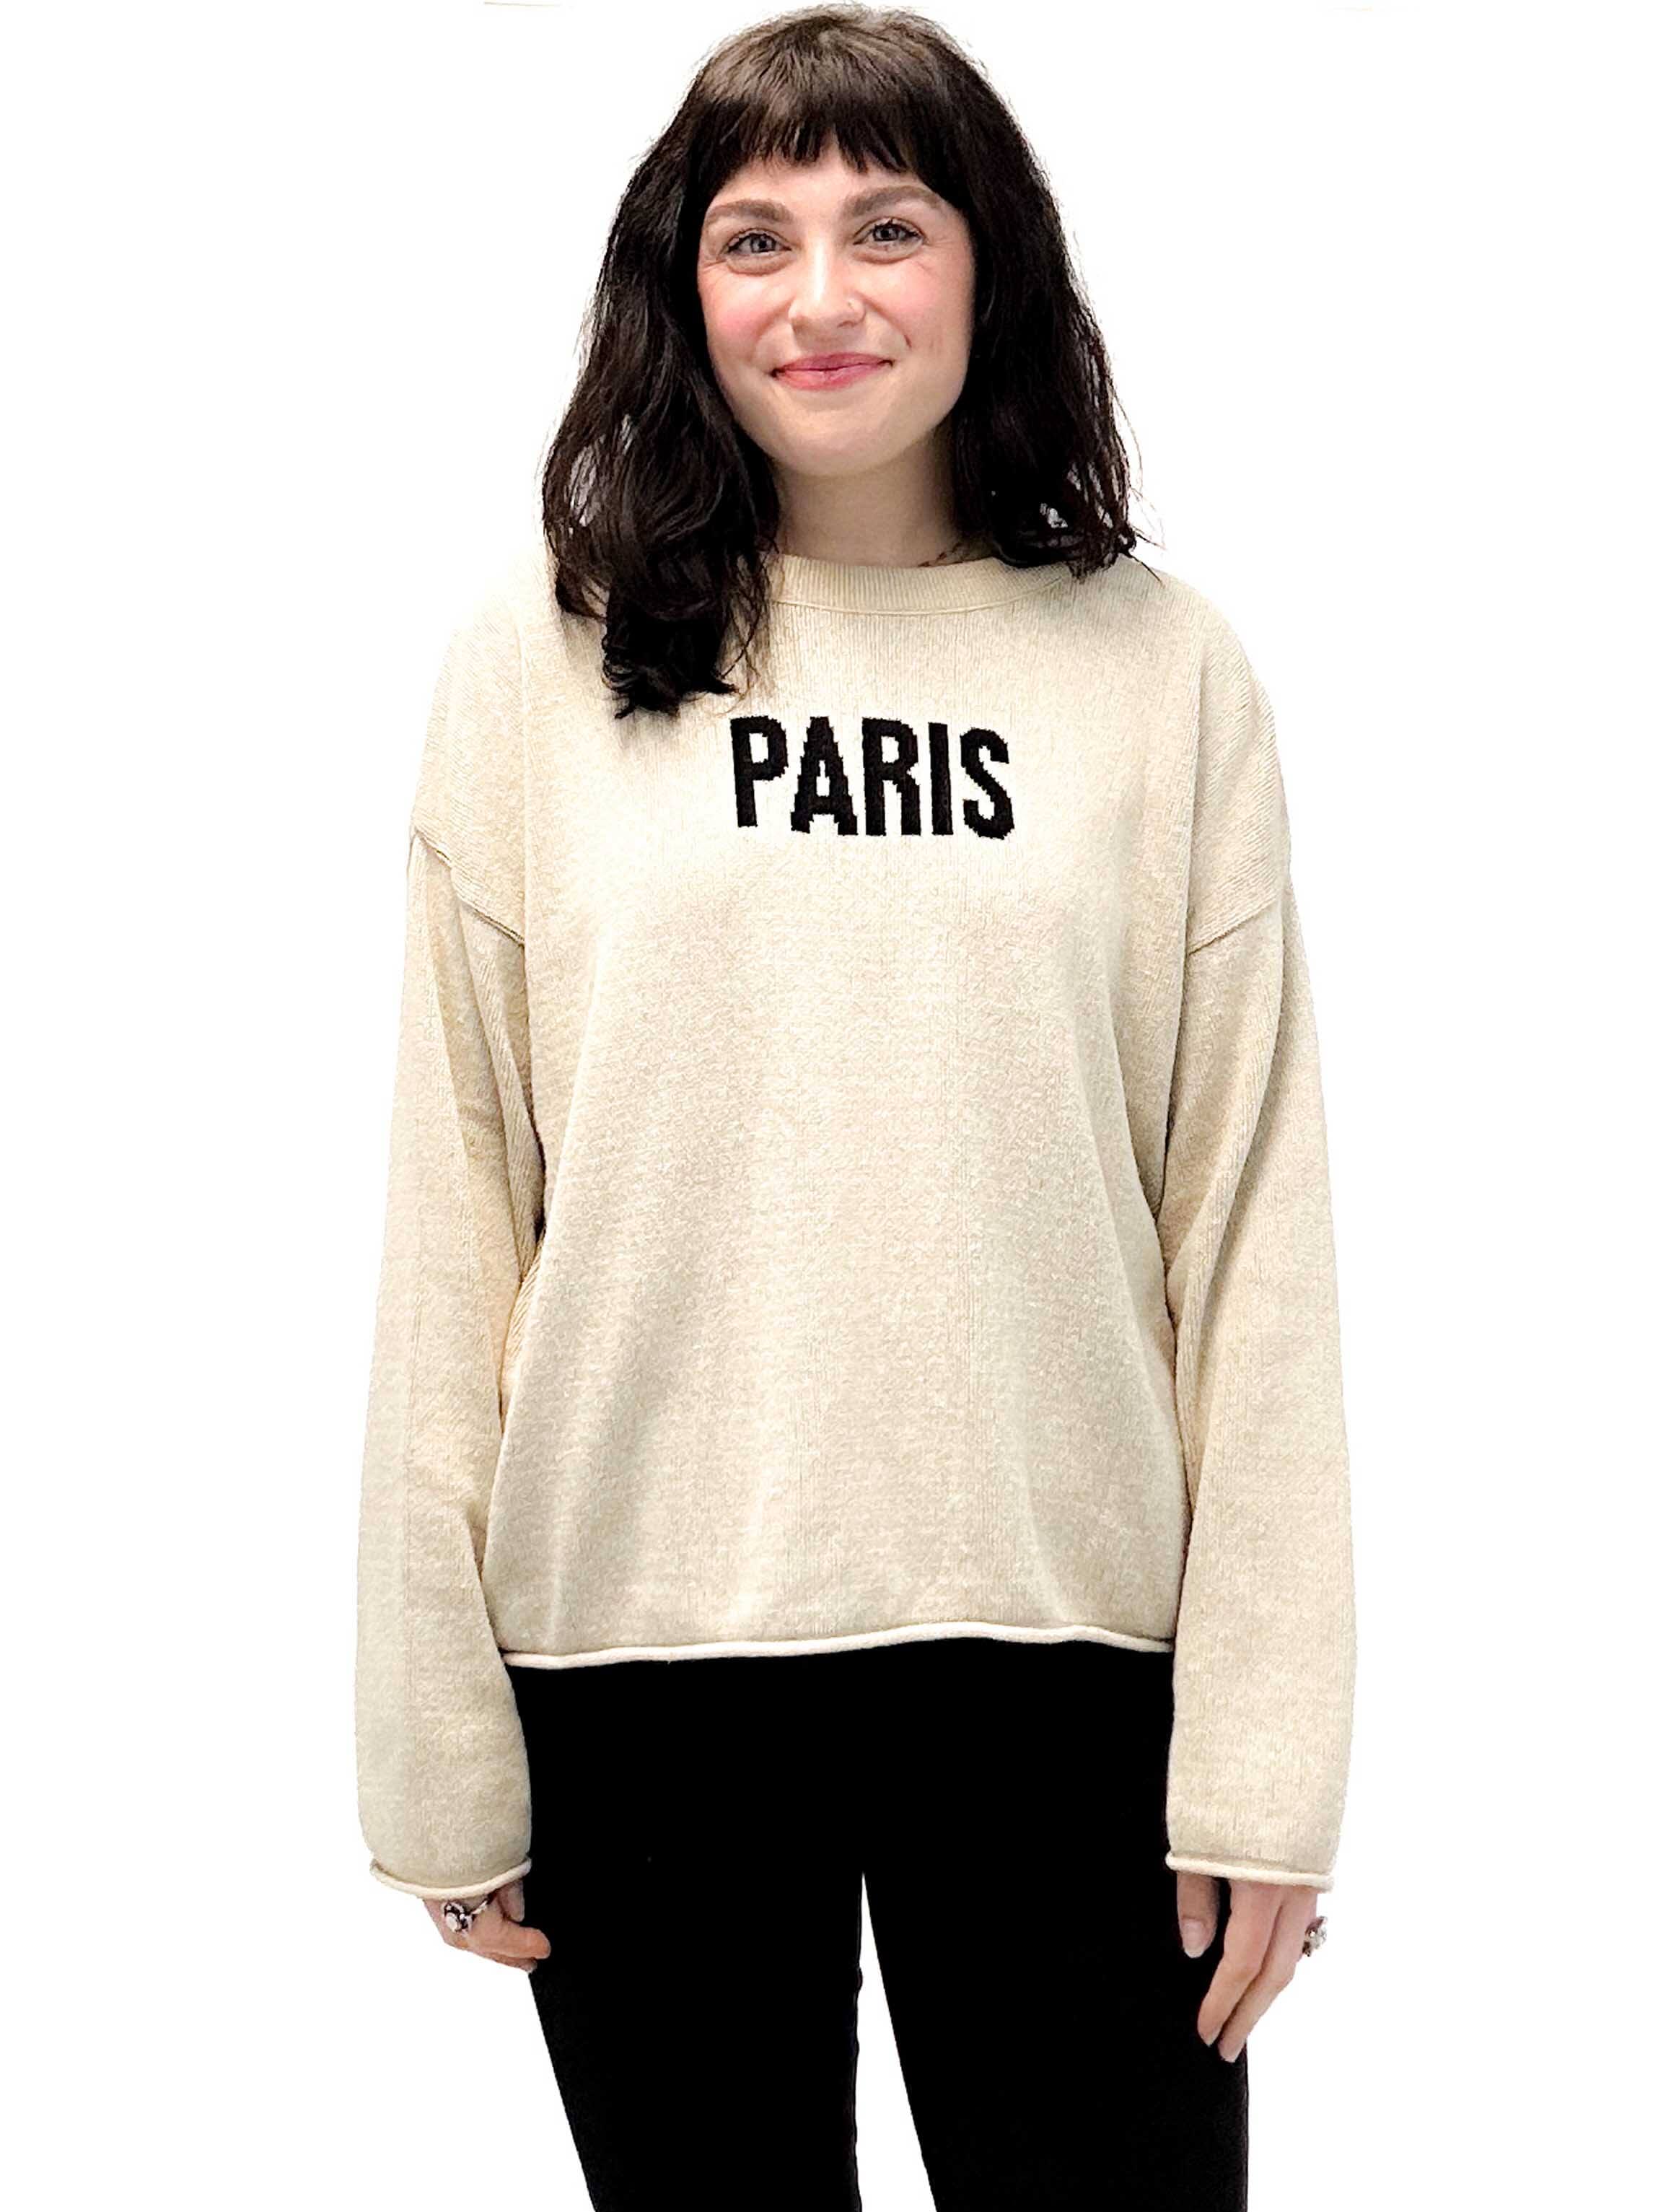 "Paris" Sweater in Camel/Black